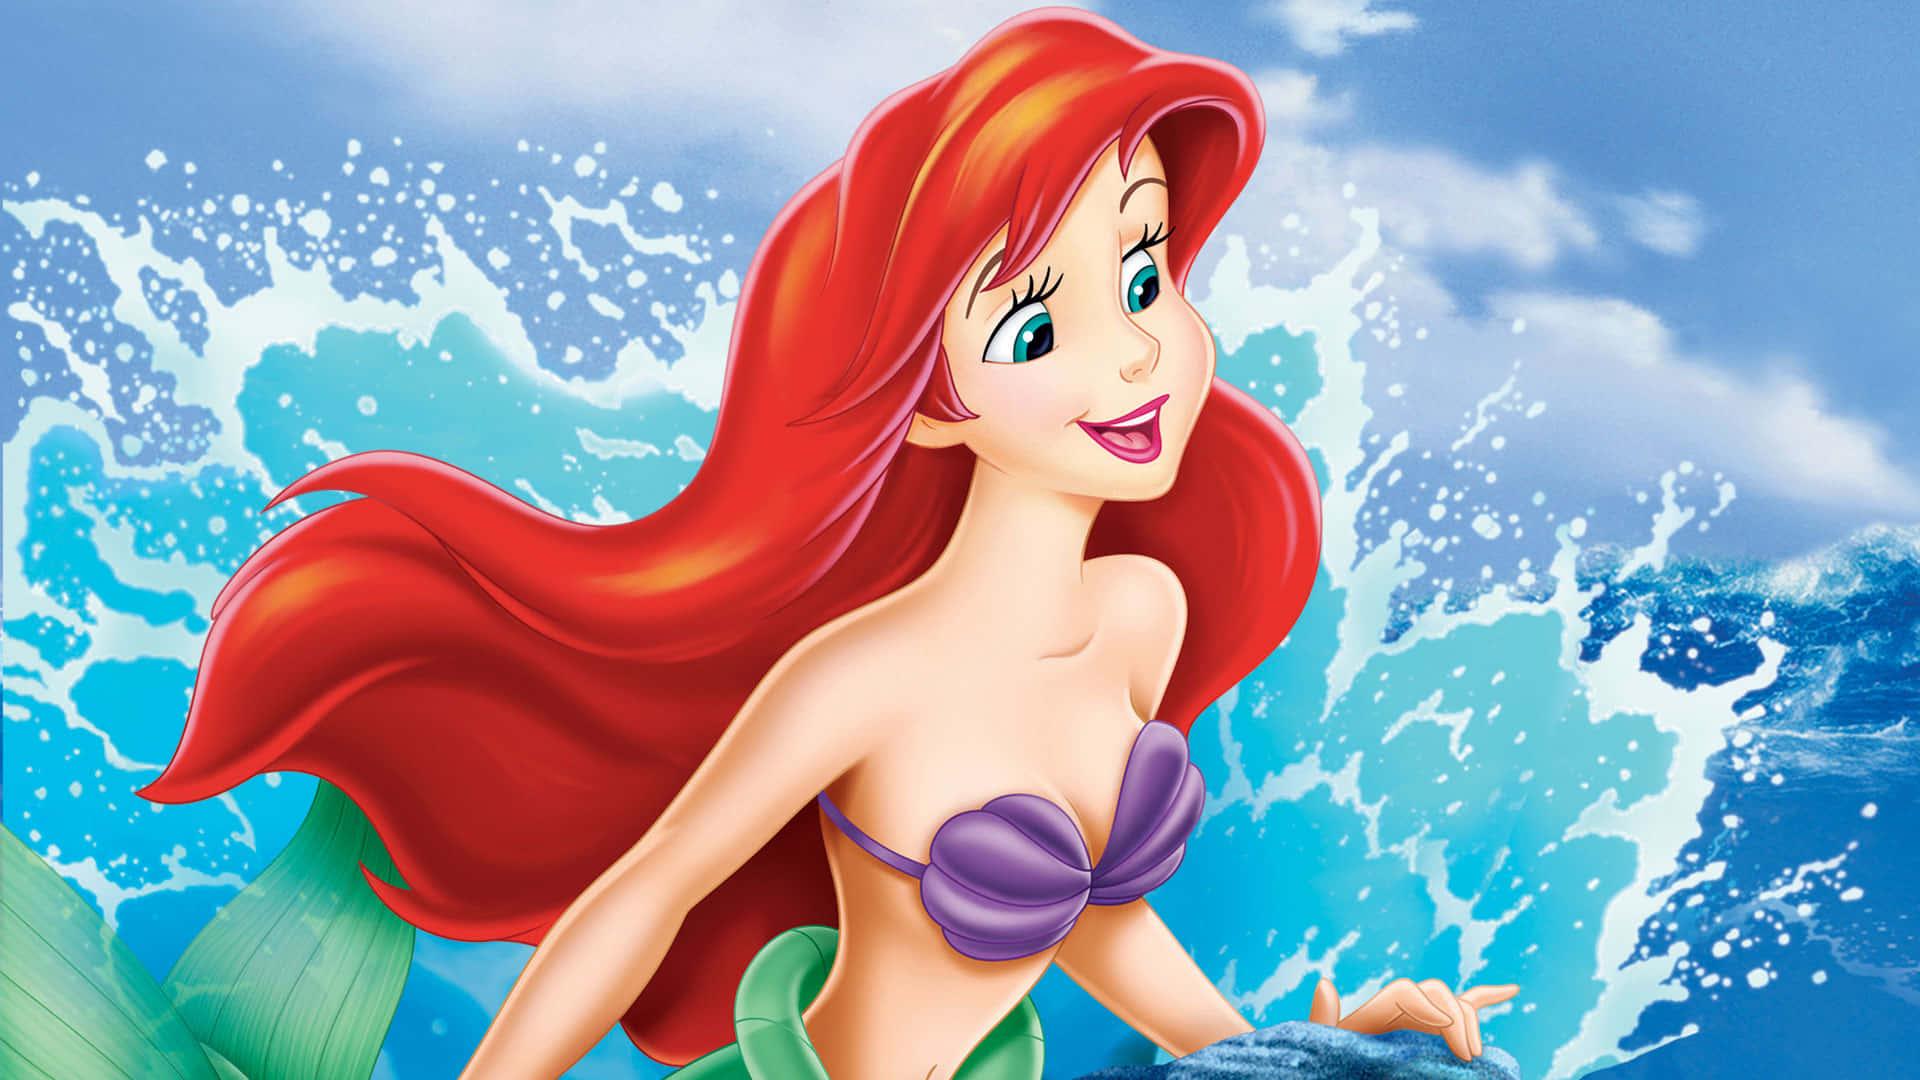 Ariel and Flounder on a beach